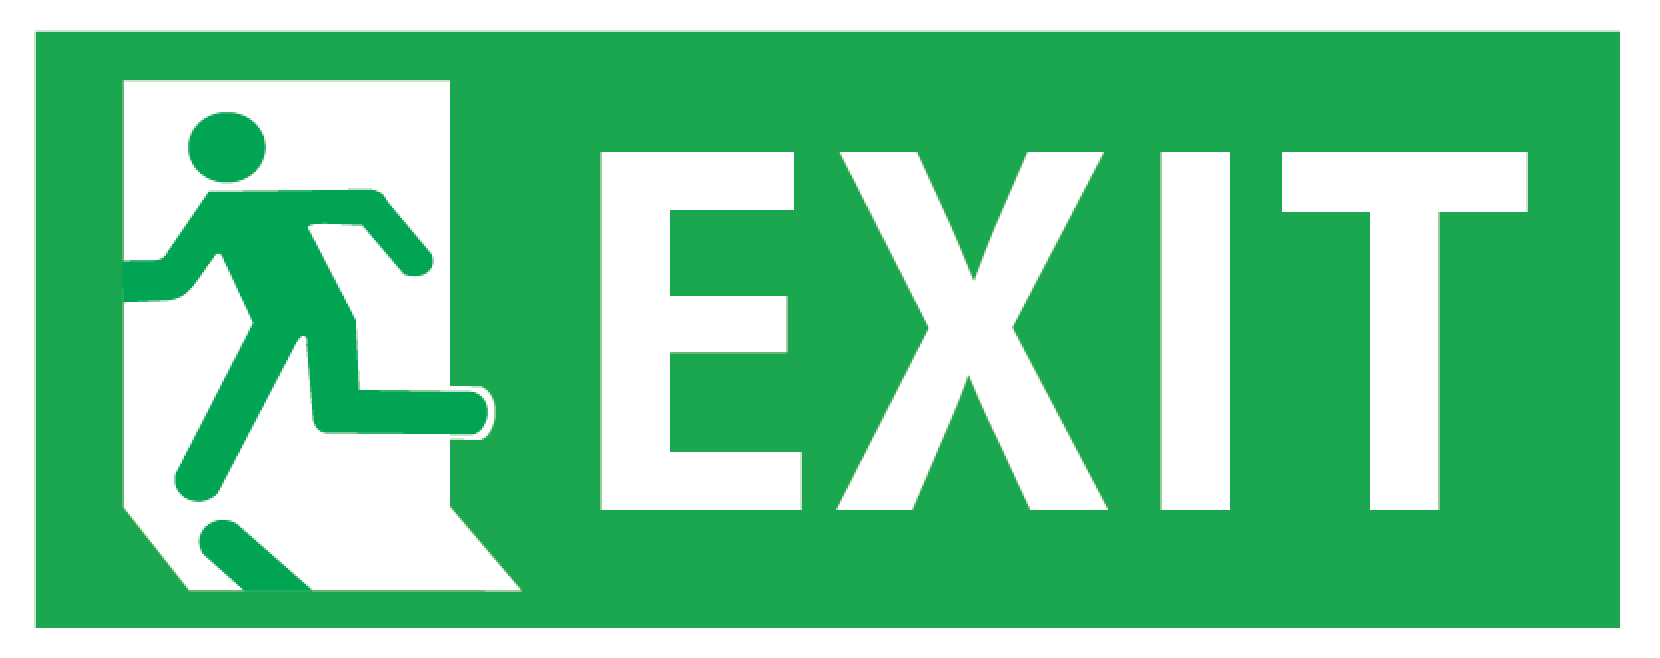 비상구 일러스트 ai 파일 exit sign. 